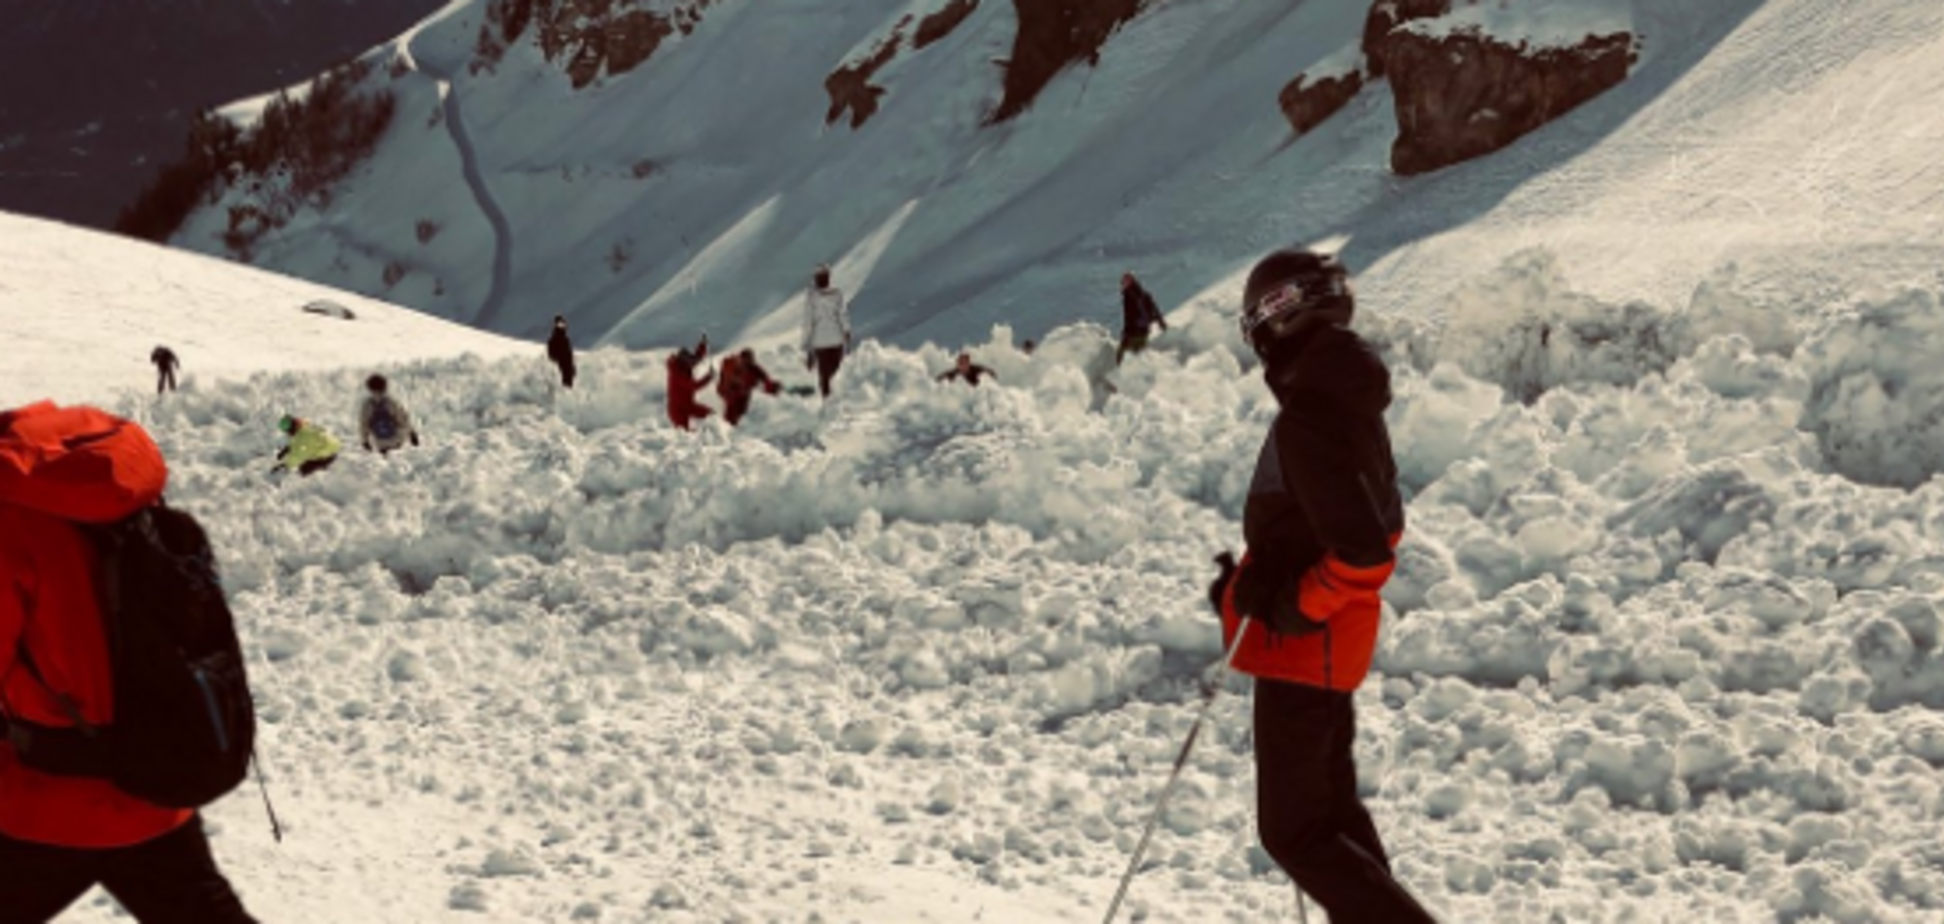 Погребены 12 человек: популярный курорт Швейцарии накрыла лавина. Фото и видео с места ЧП